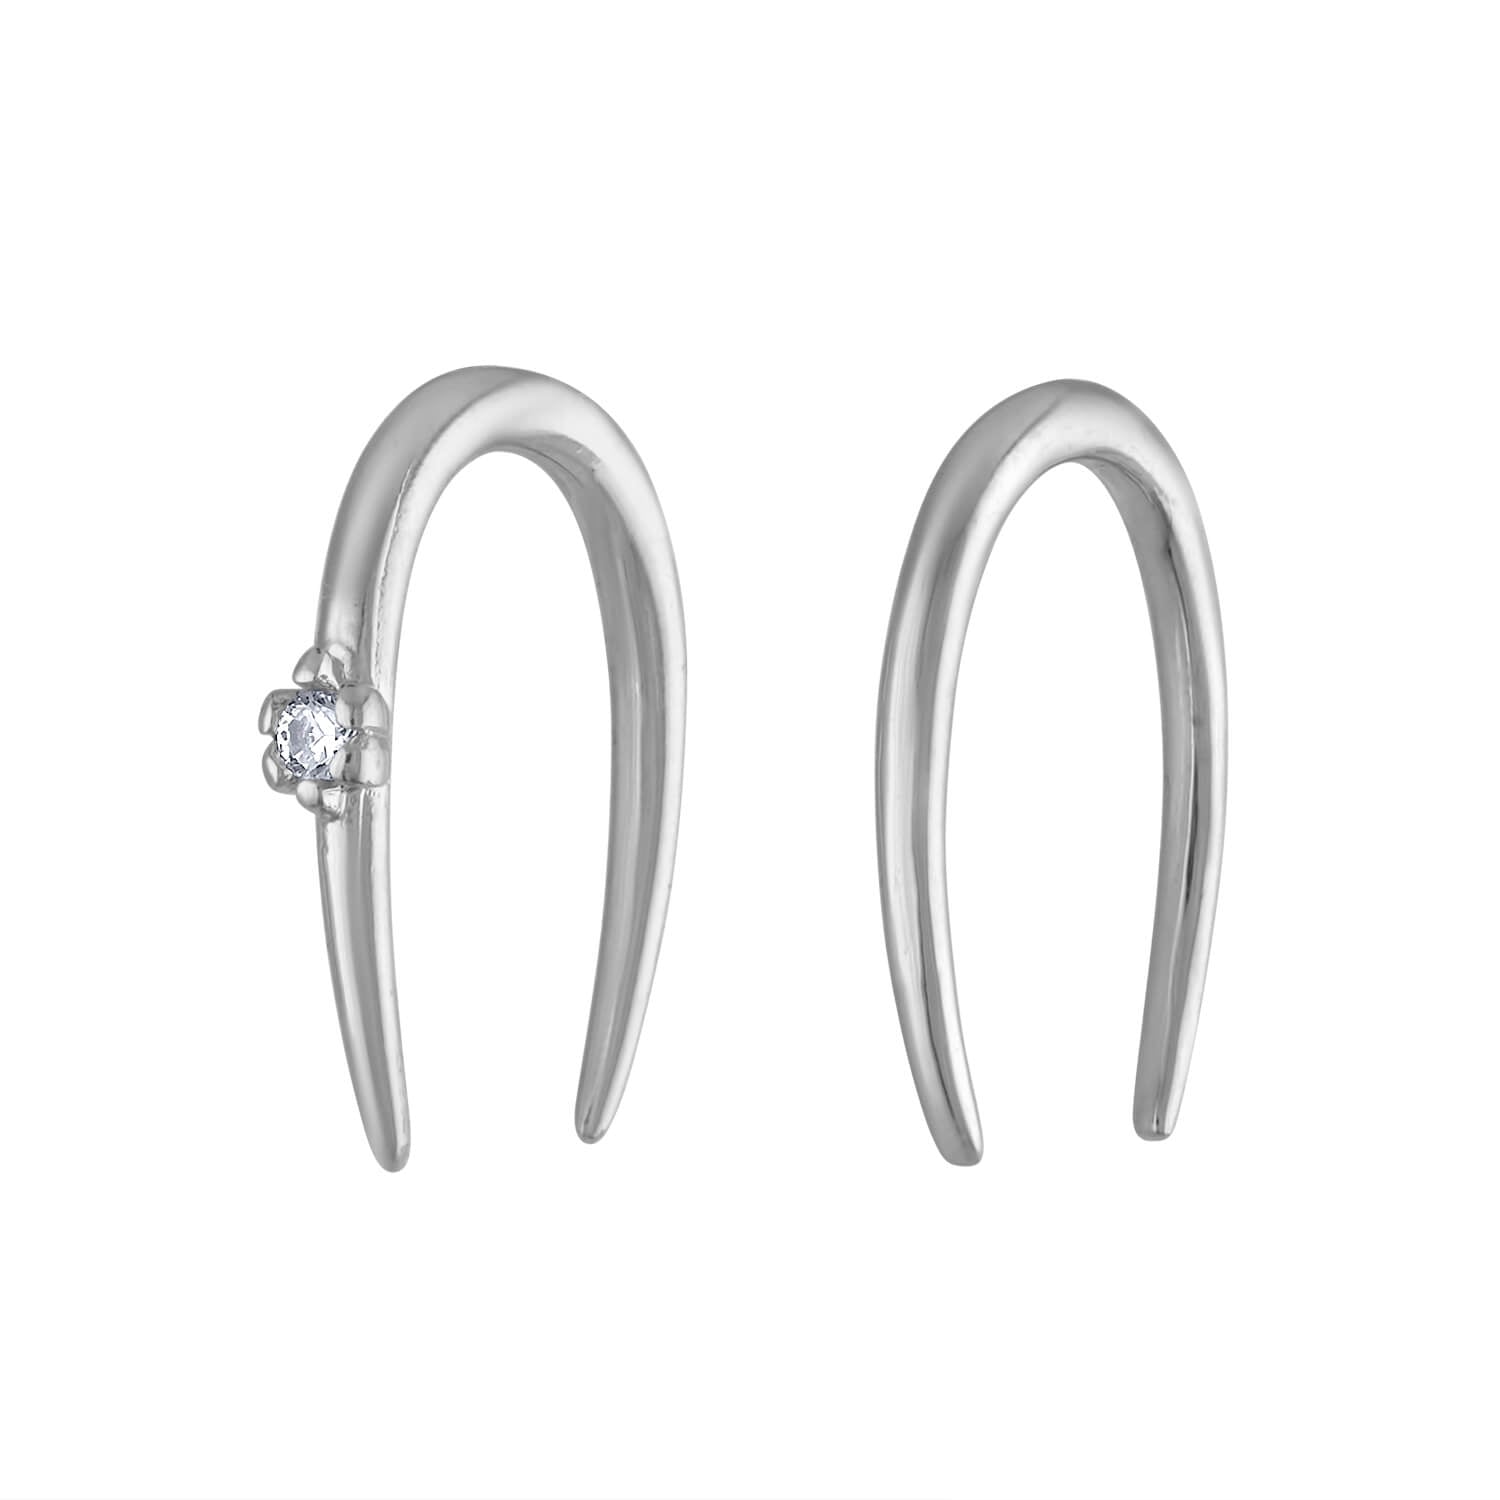 North Star Hoop Earrings, Sterling Silver Hoop Earrings, CZ Star Earrings, Silver  Hoops, North Star Jewelry, Dainty Earrings - Etsy | Sterling silver hoop  earrings, Star jewelry, Silver hoop earrings